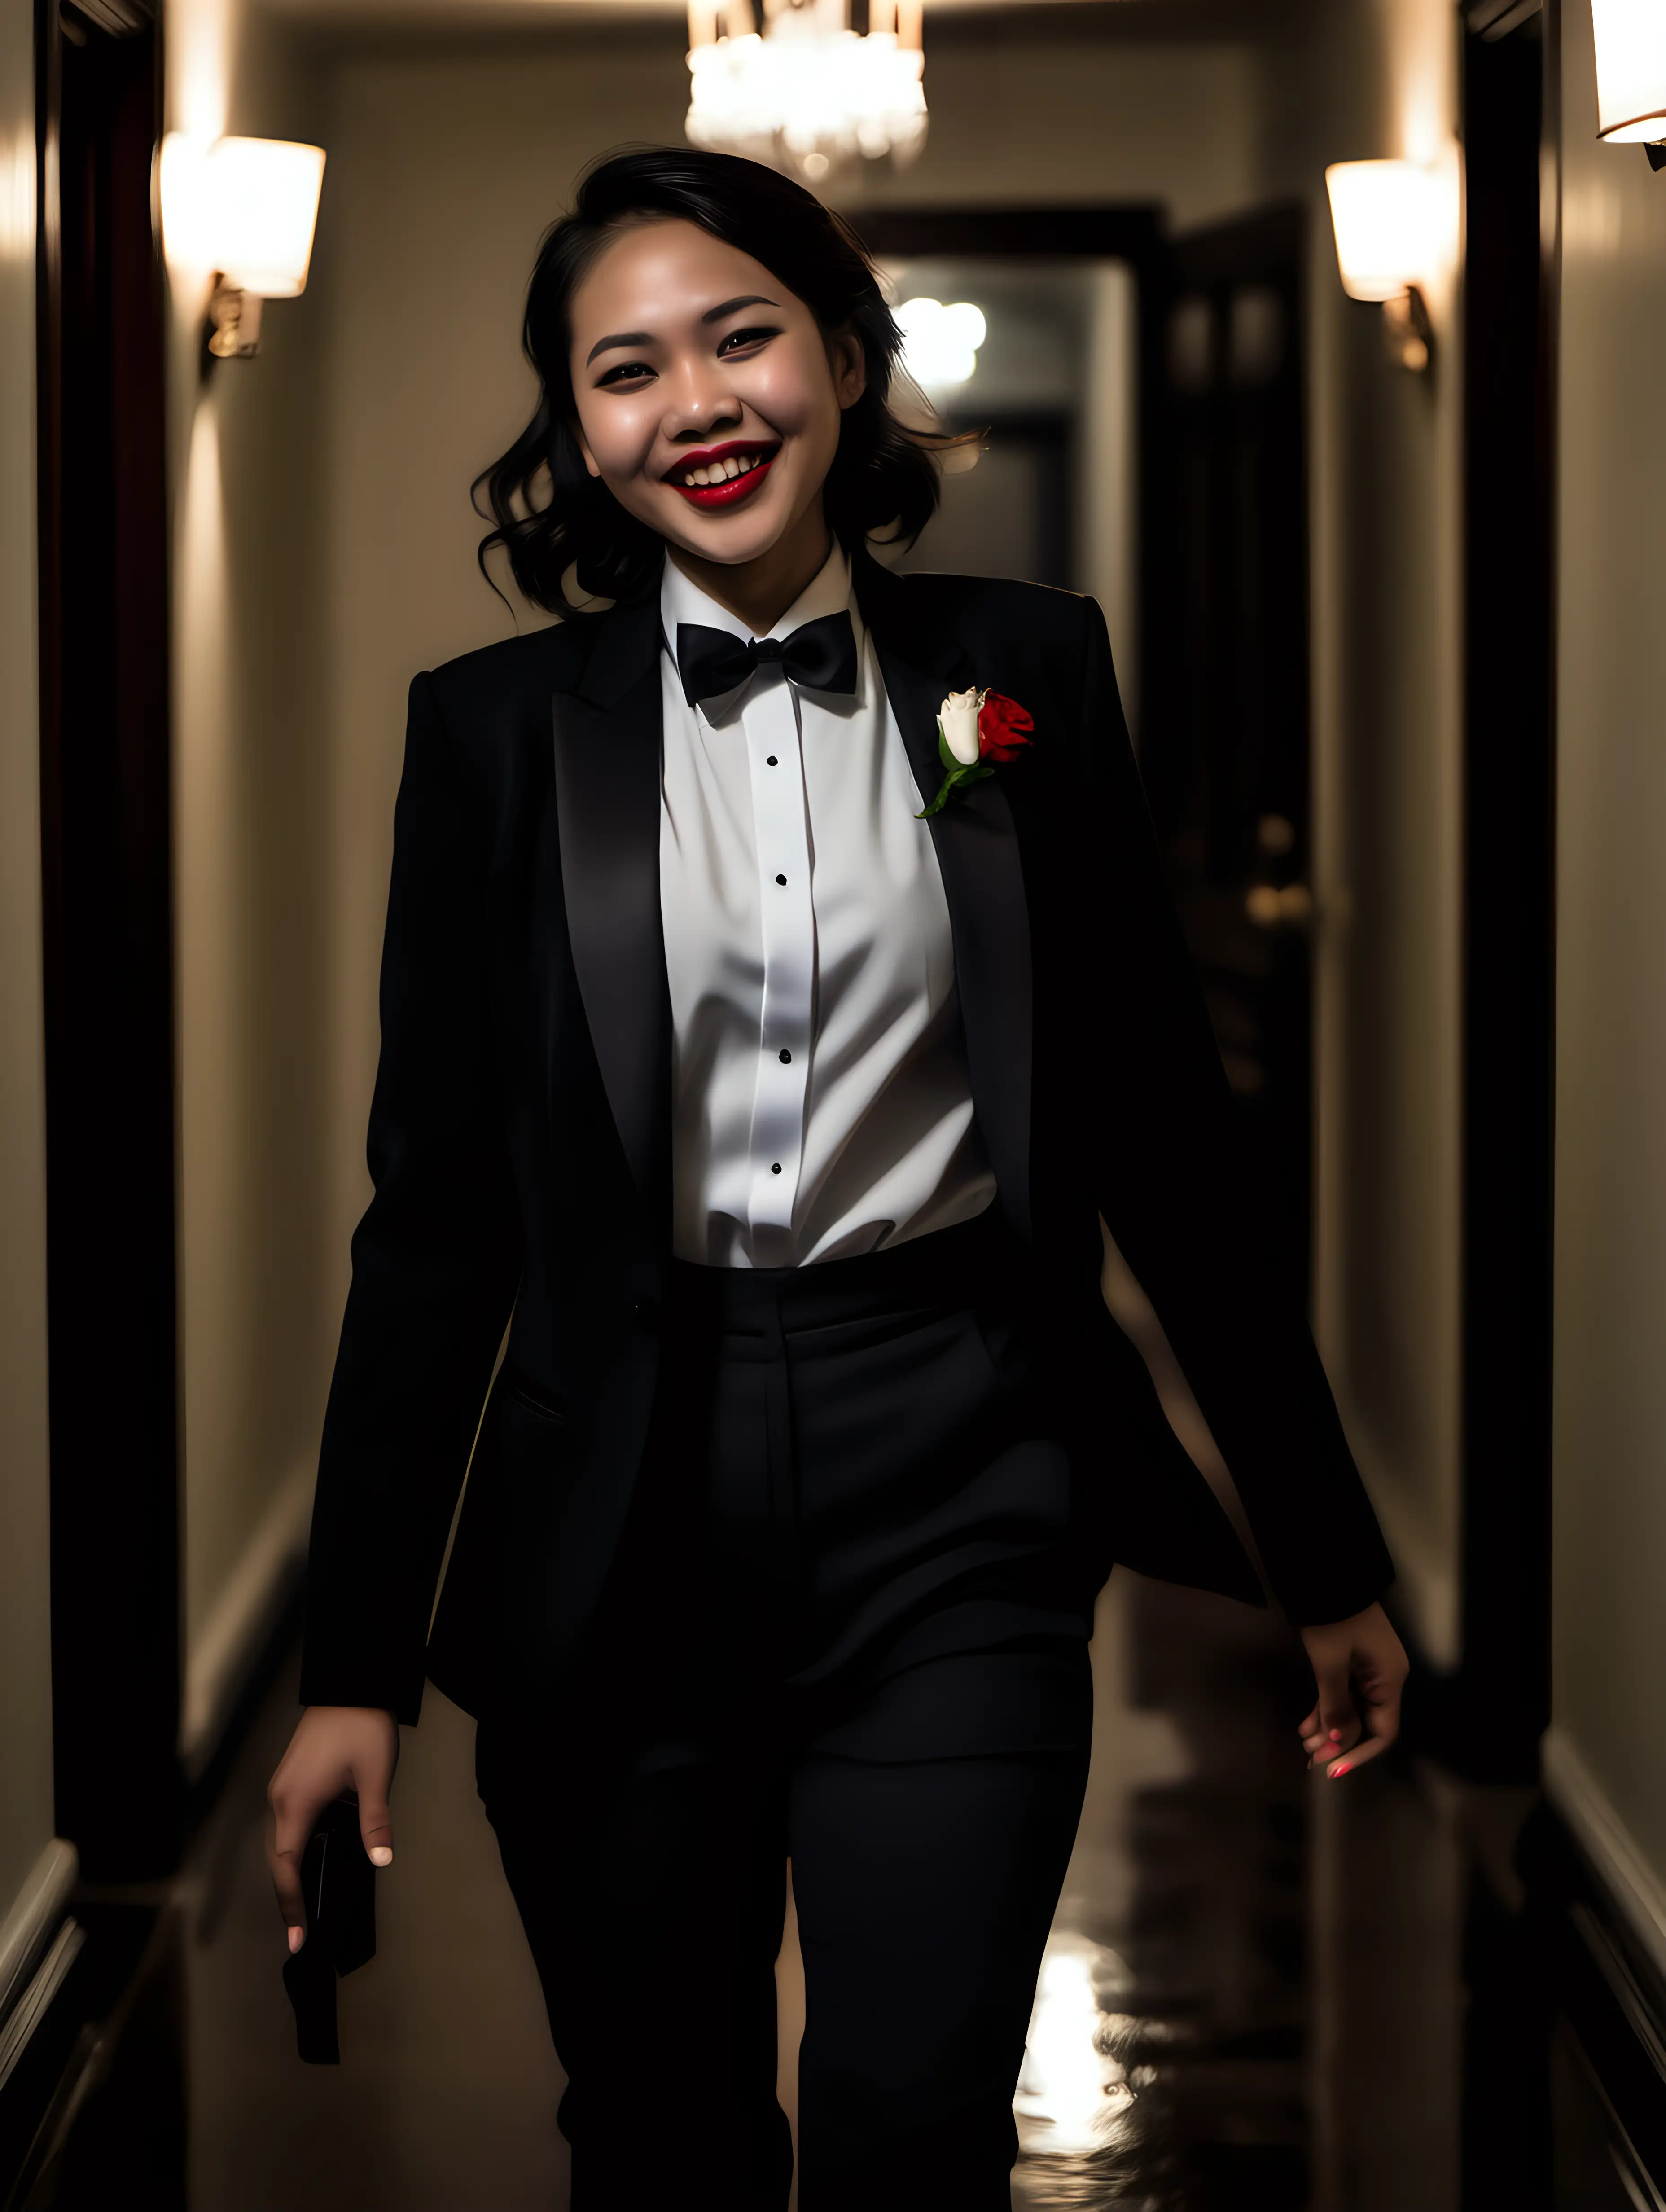 Smiling-Pinoy-Woman-in-Tuxedo-Walking-Down-Dark-Mansion-Hallway